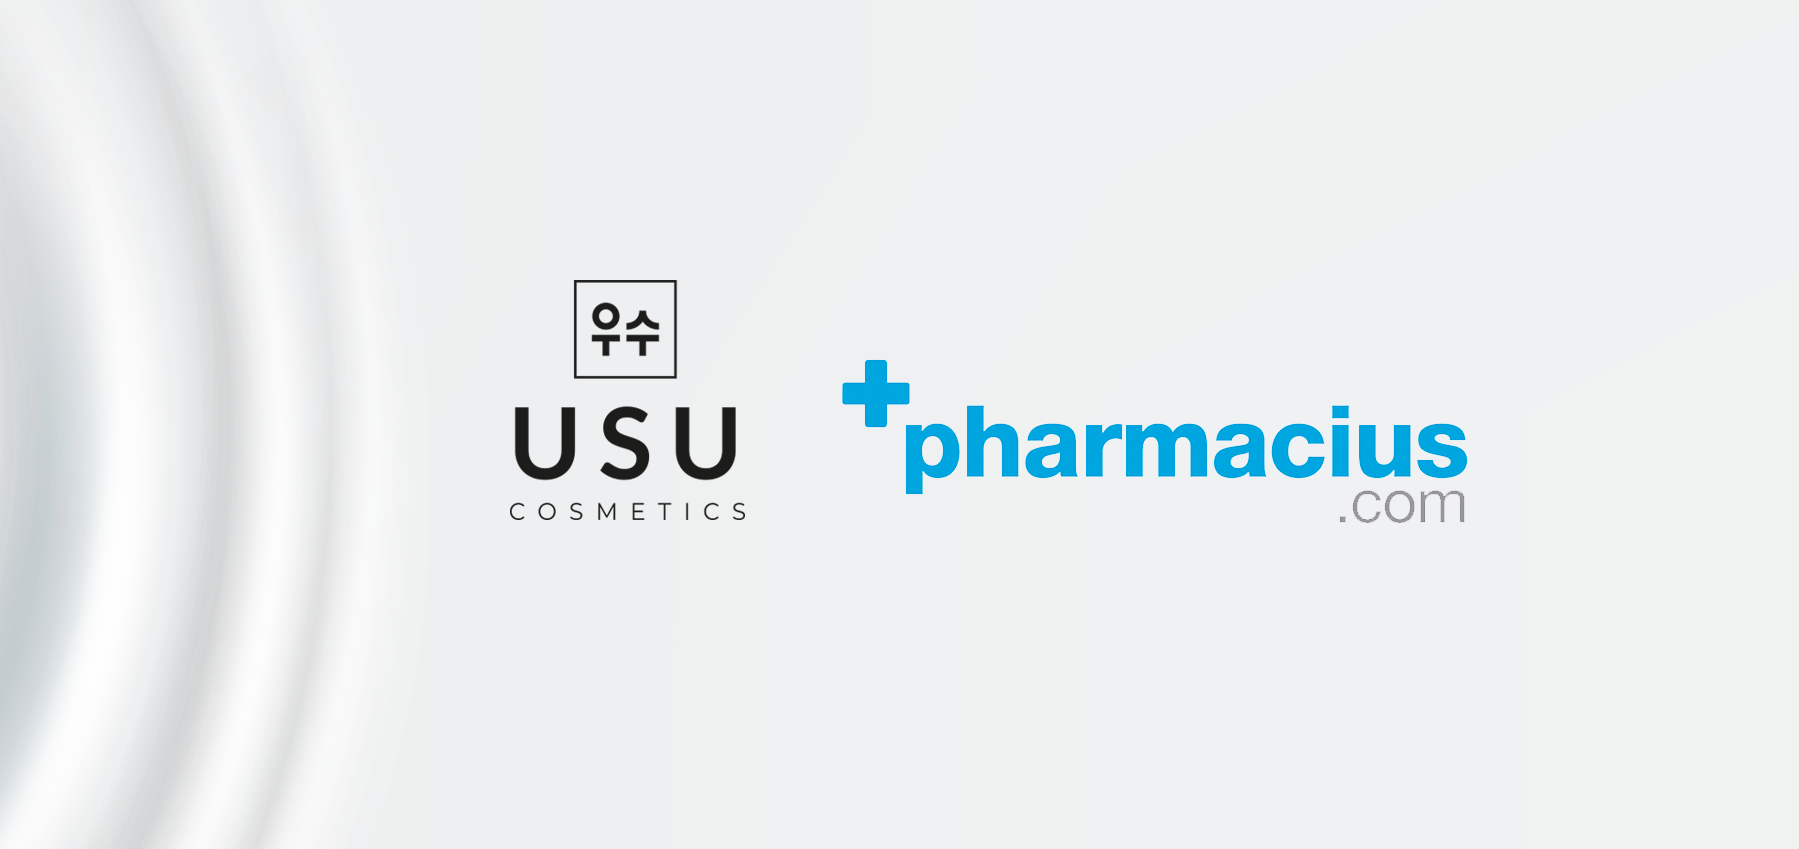 Los productos USU Cosmetics ya están en Pharmacius.com